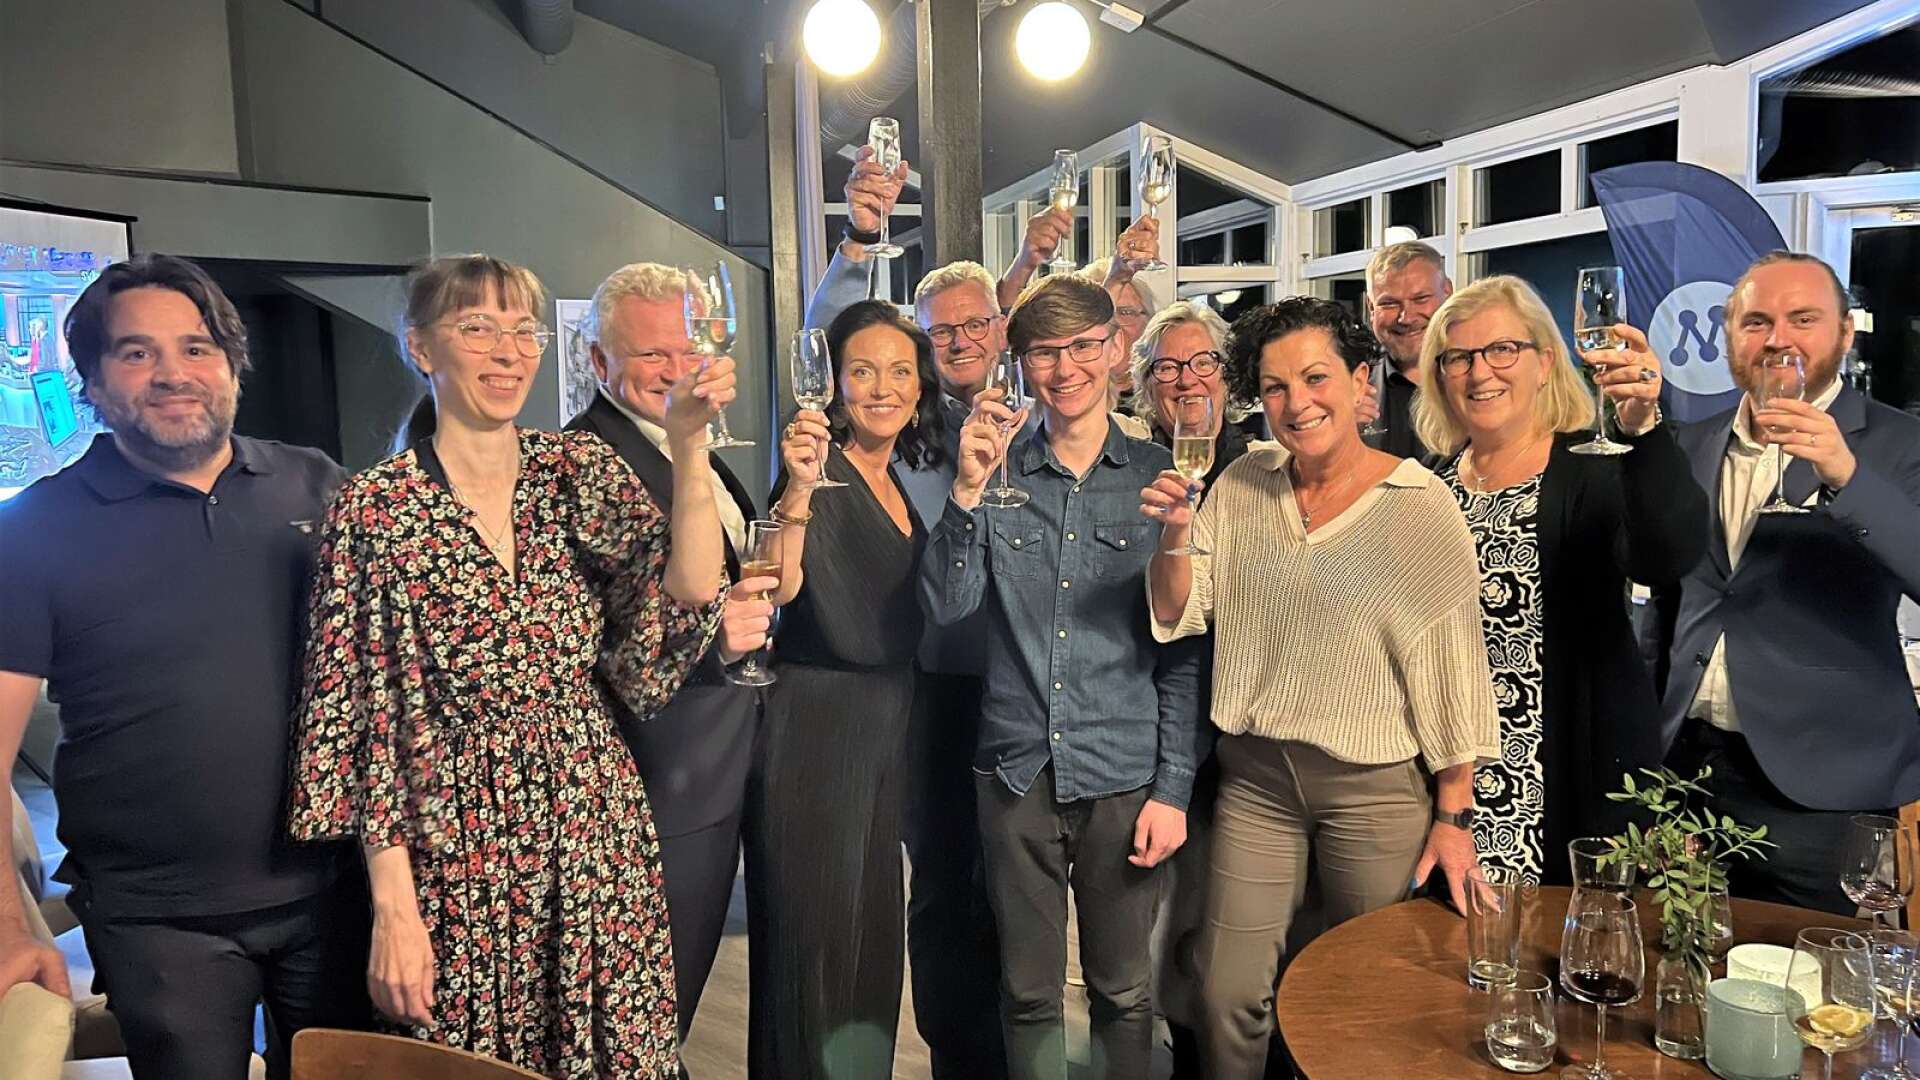 Glada moderater på valvaka på Dalslands Skafferi i Åmål efter att valresultatet stod klart under natten. Valet och maktskiftet är förstås en av de stora händelserna under 2022.